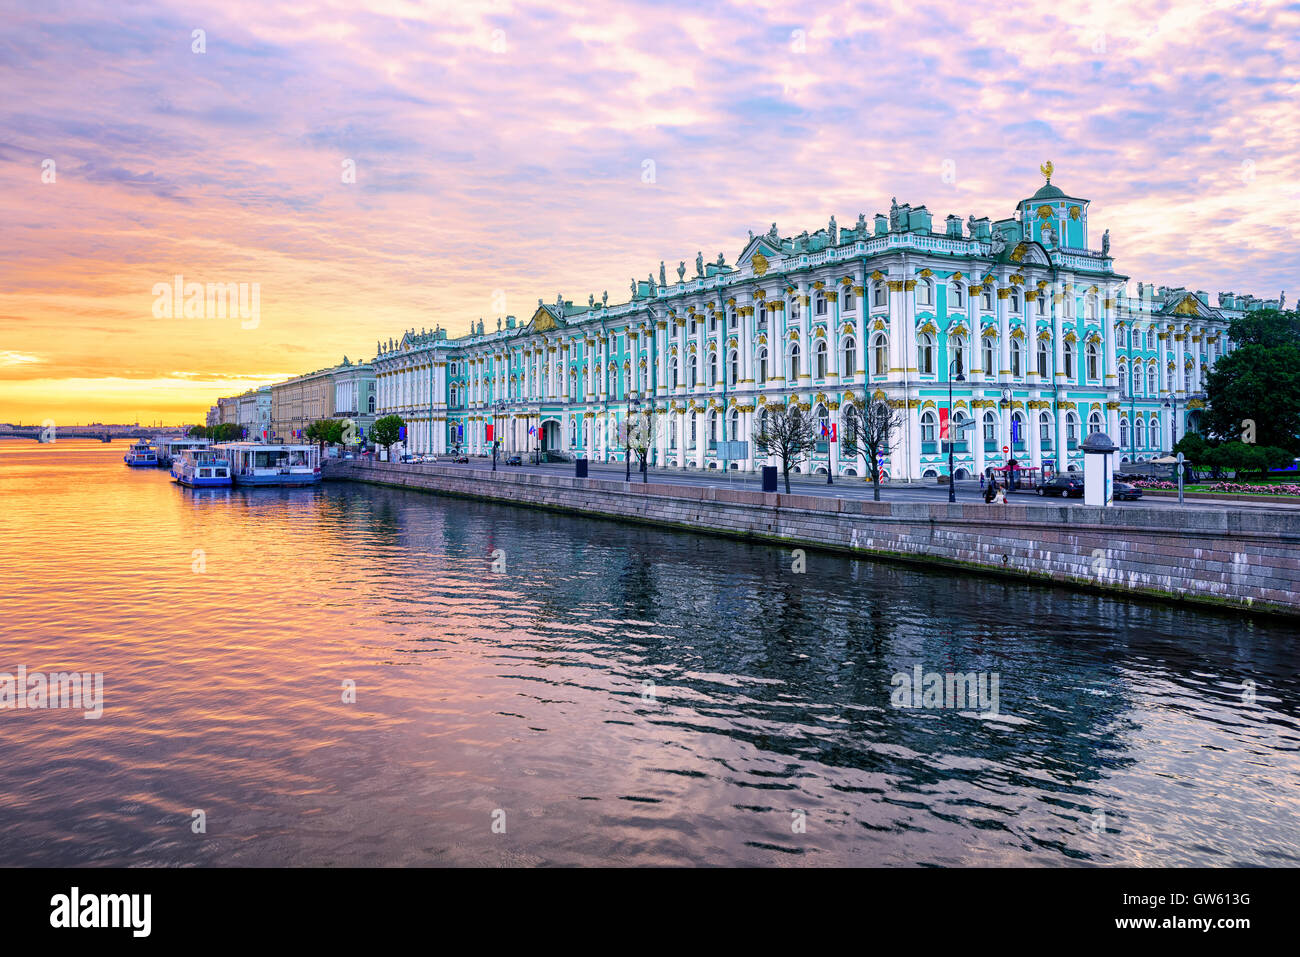 Palais d'hiver de la construction de maisons, musée de l'Ermitage se reflète dans la rivière Neva dramatique sur le lever du soleil, St Petersbourg, Russie Banque D'Images